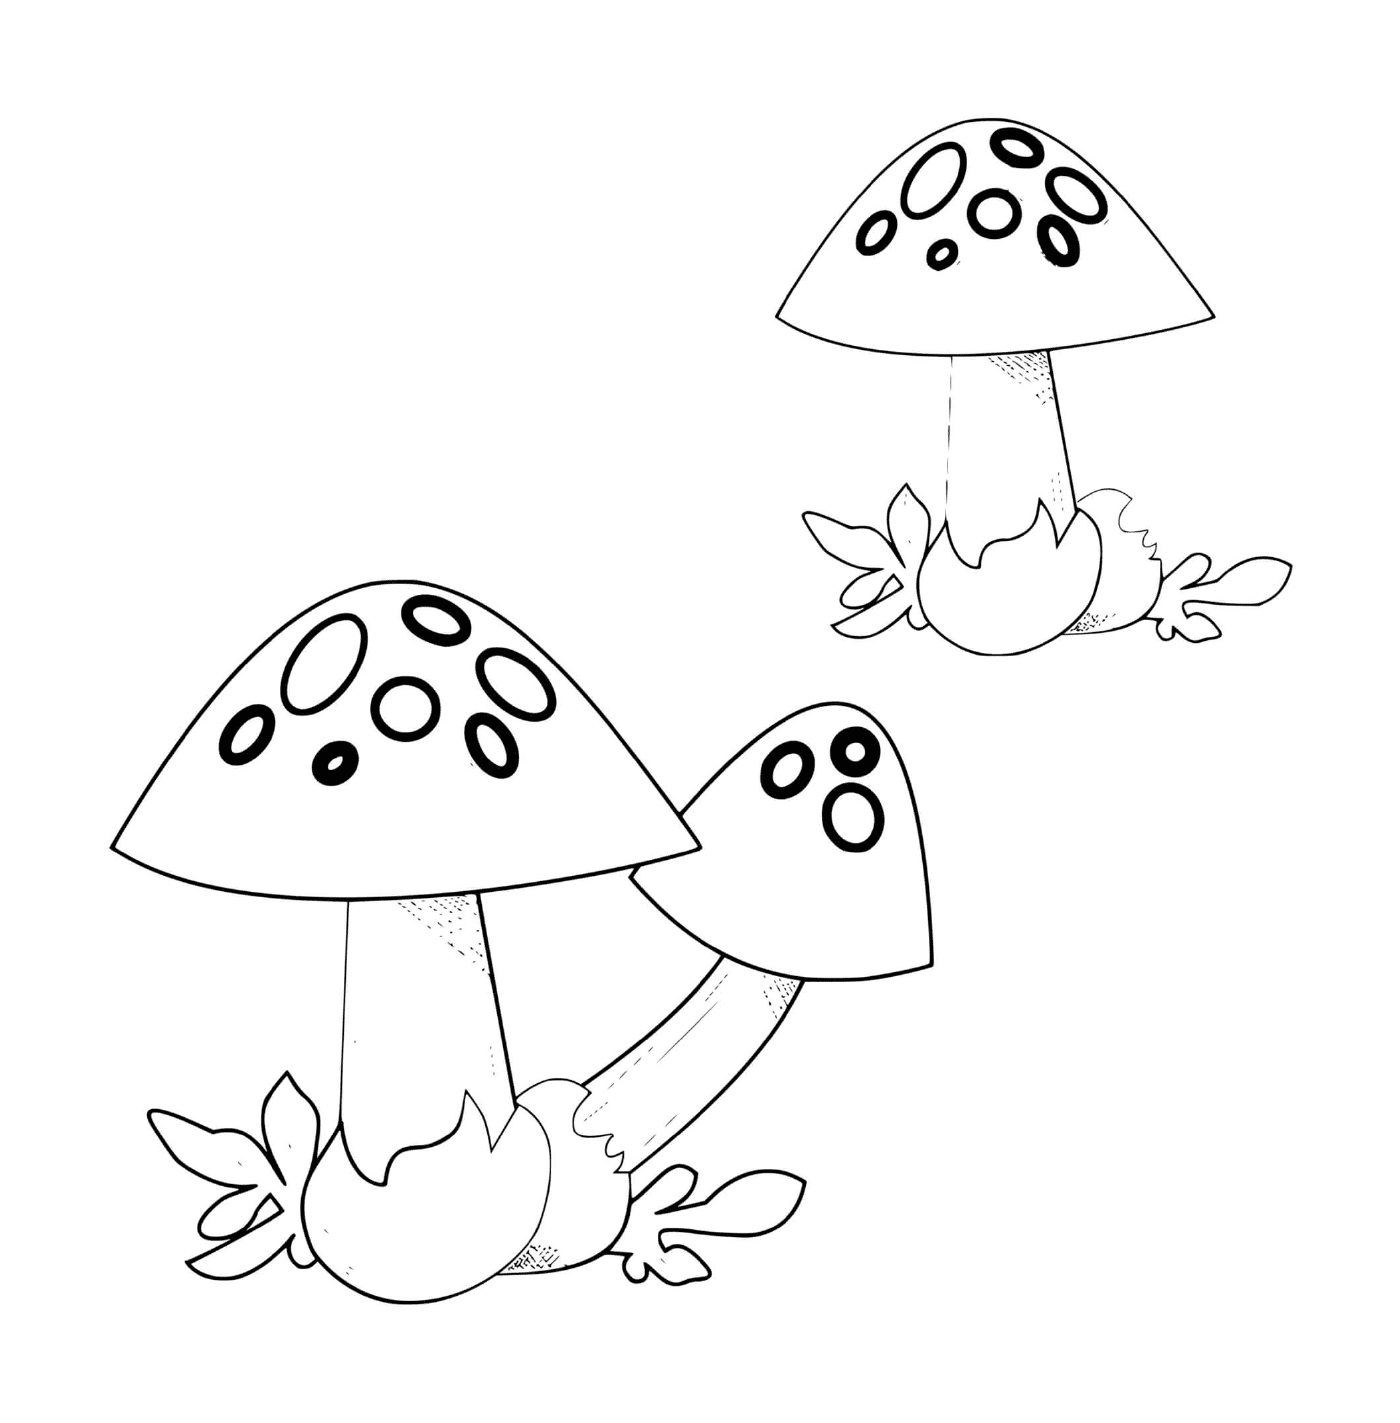   Deux champignons volvaires côte à côte 